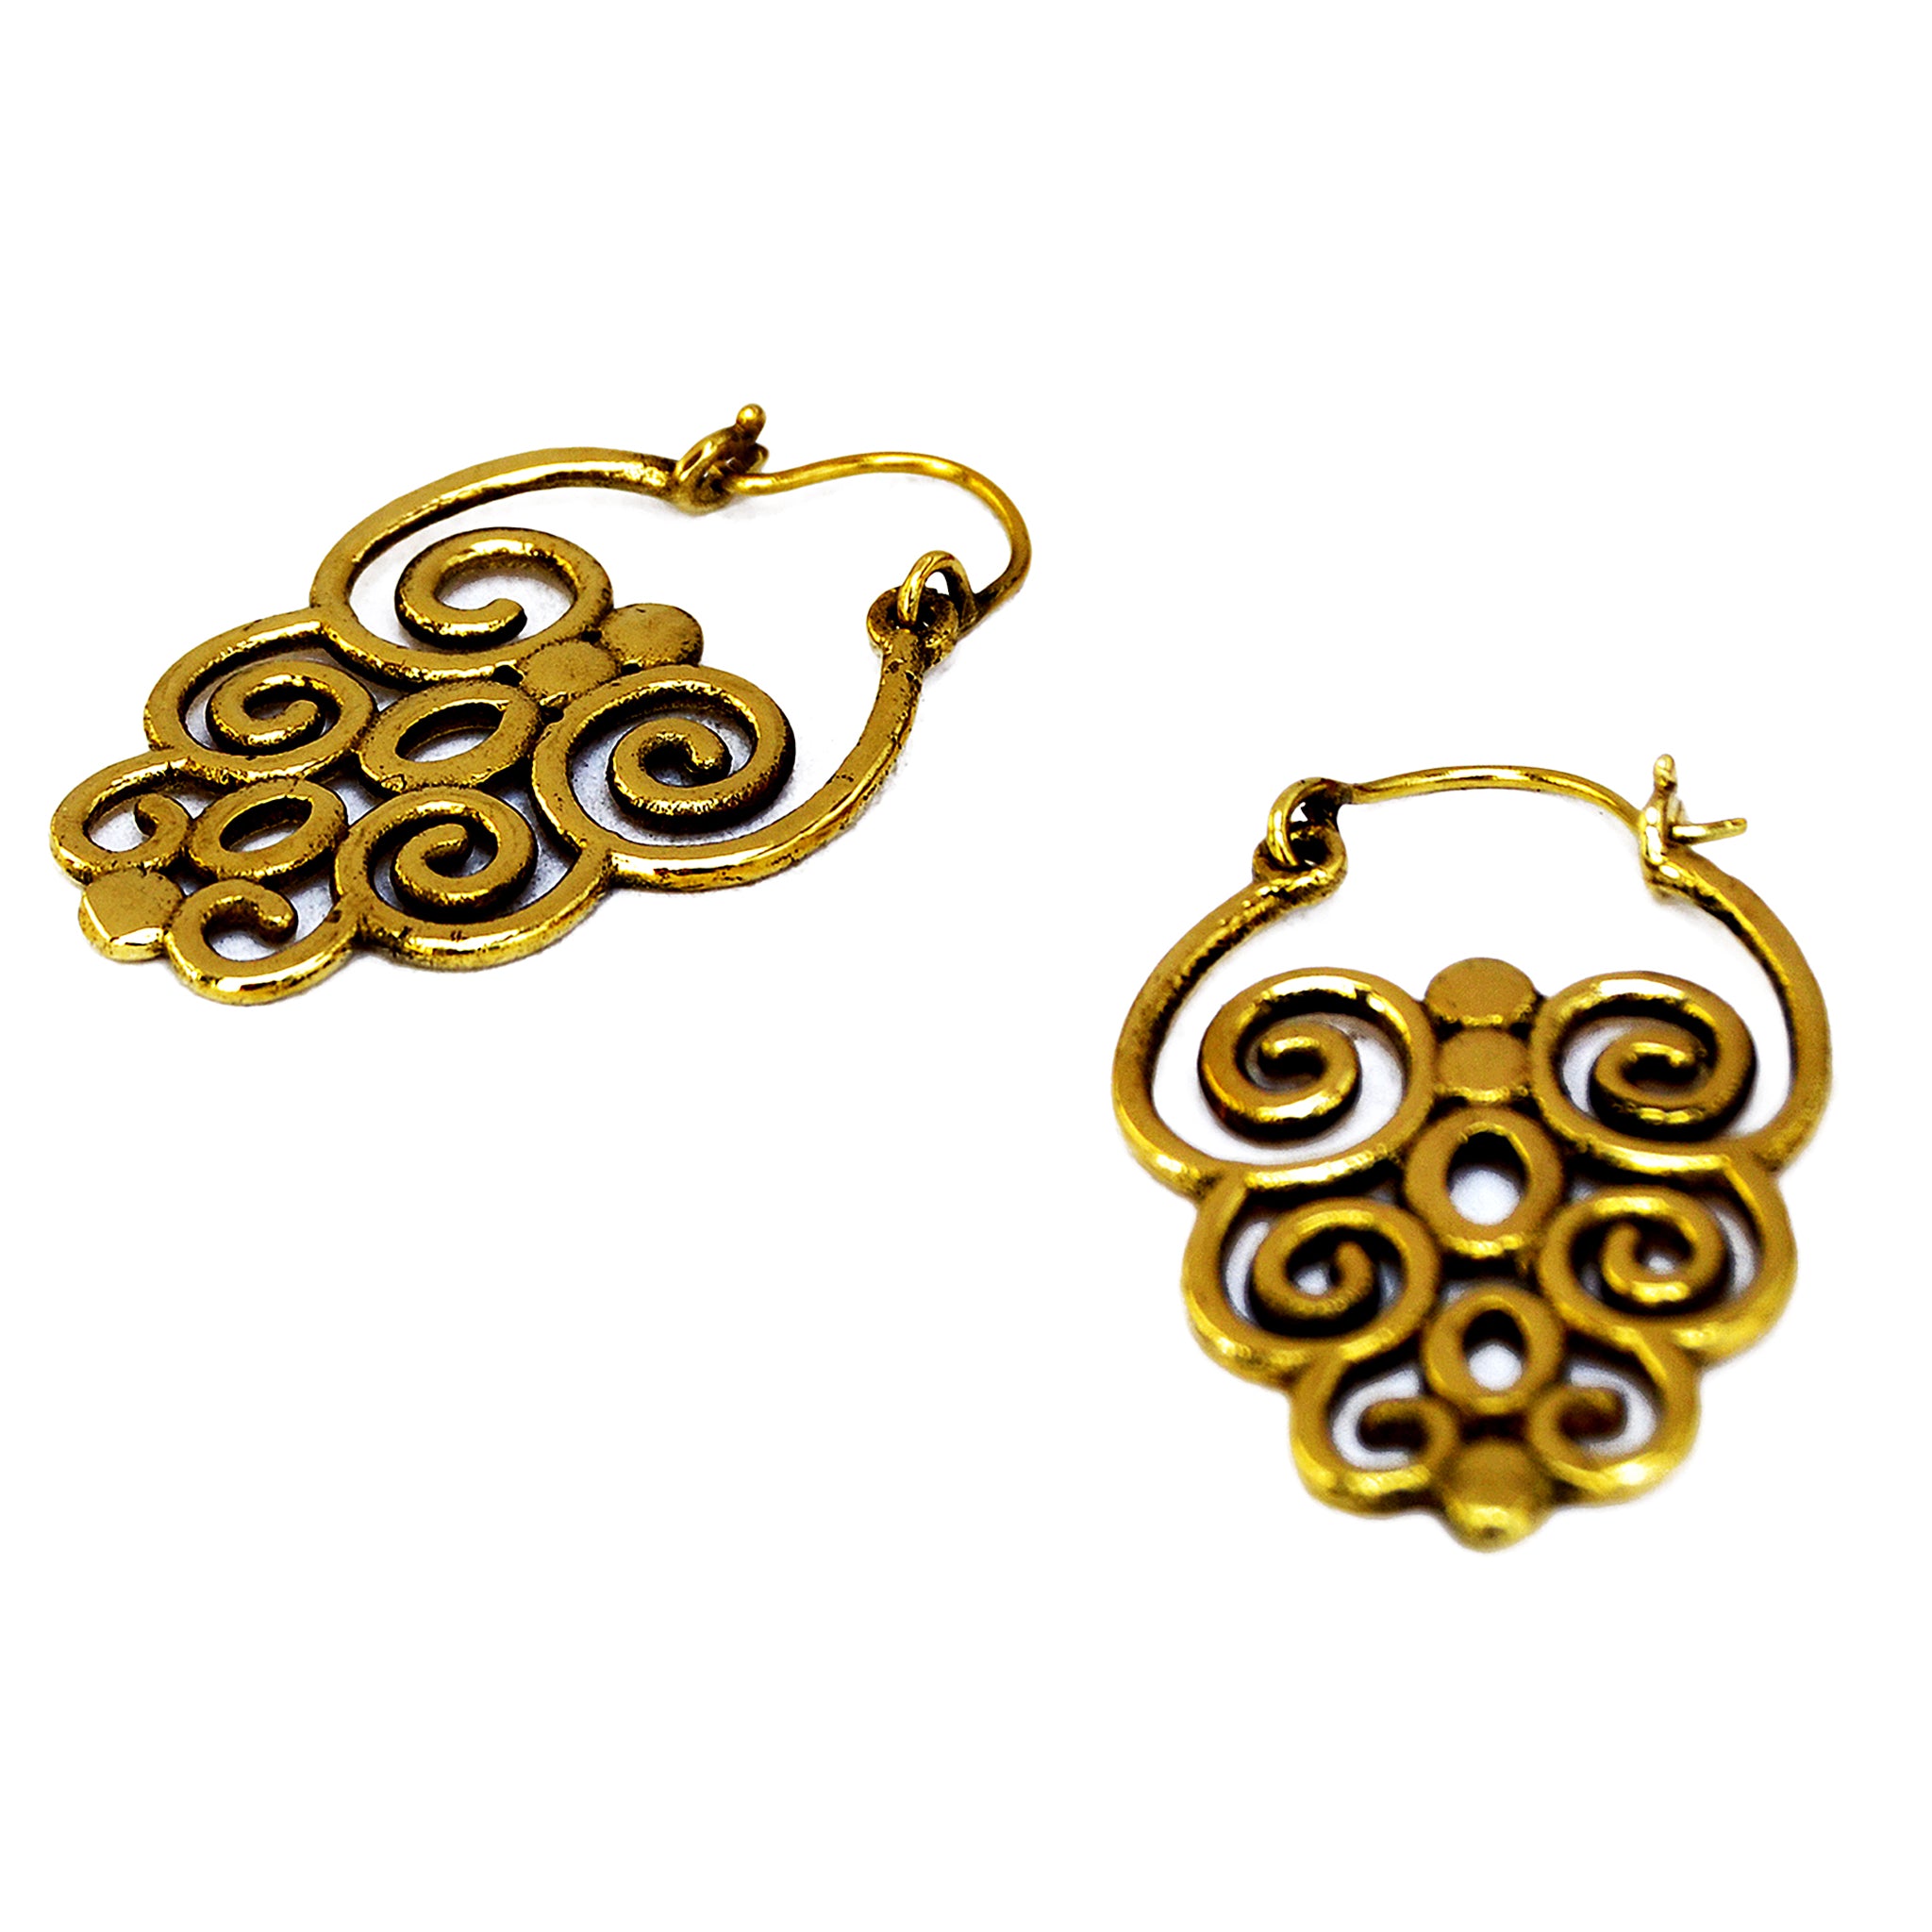 Brass tribal earrings